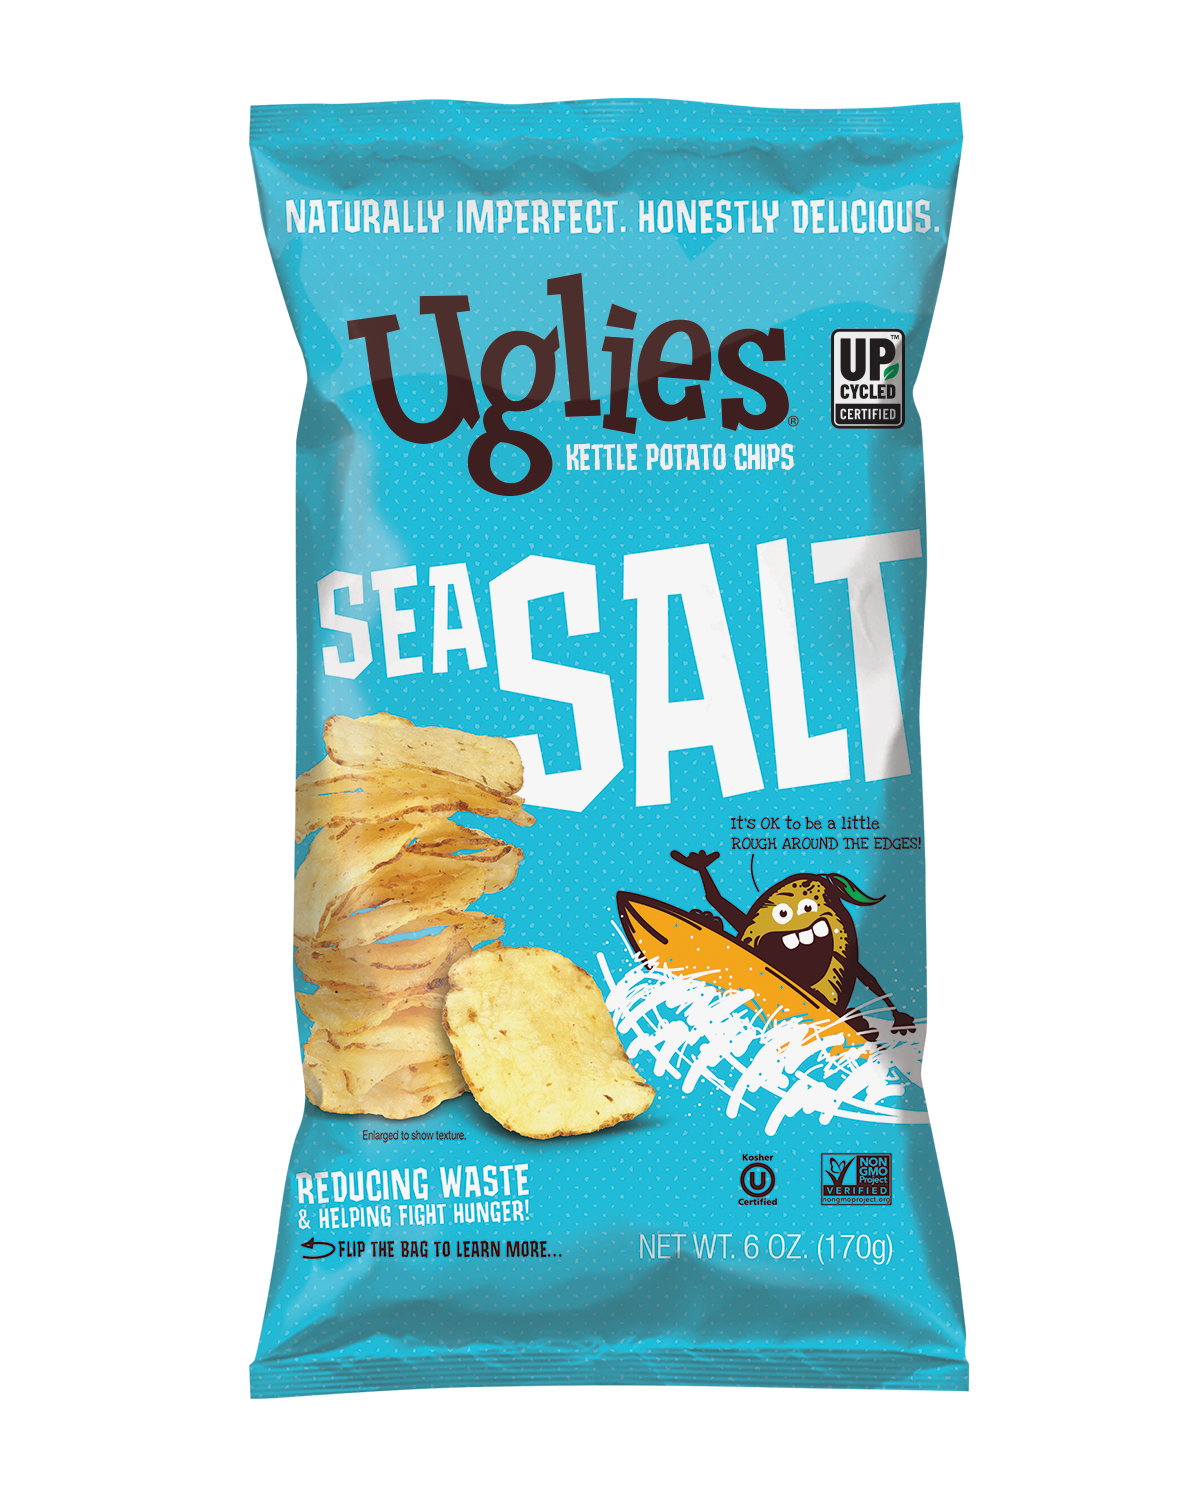 Kettle Brand Potato Chips Sea Salt Kettle Chips Snack - 2oz